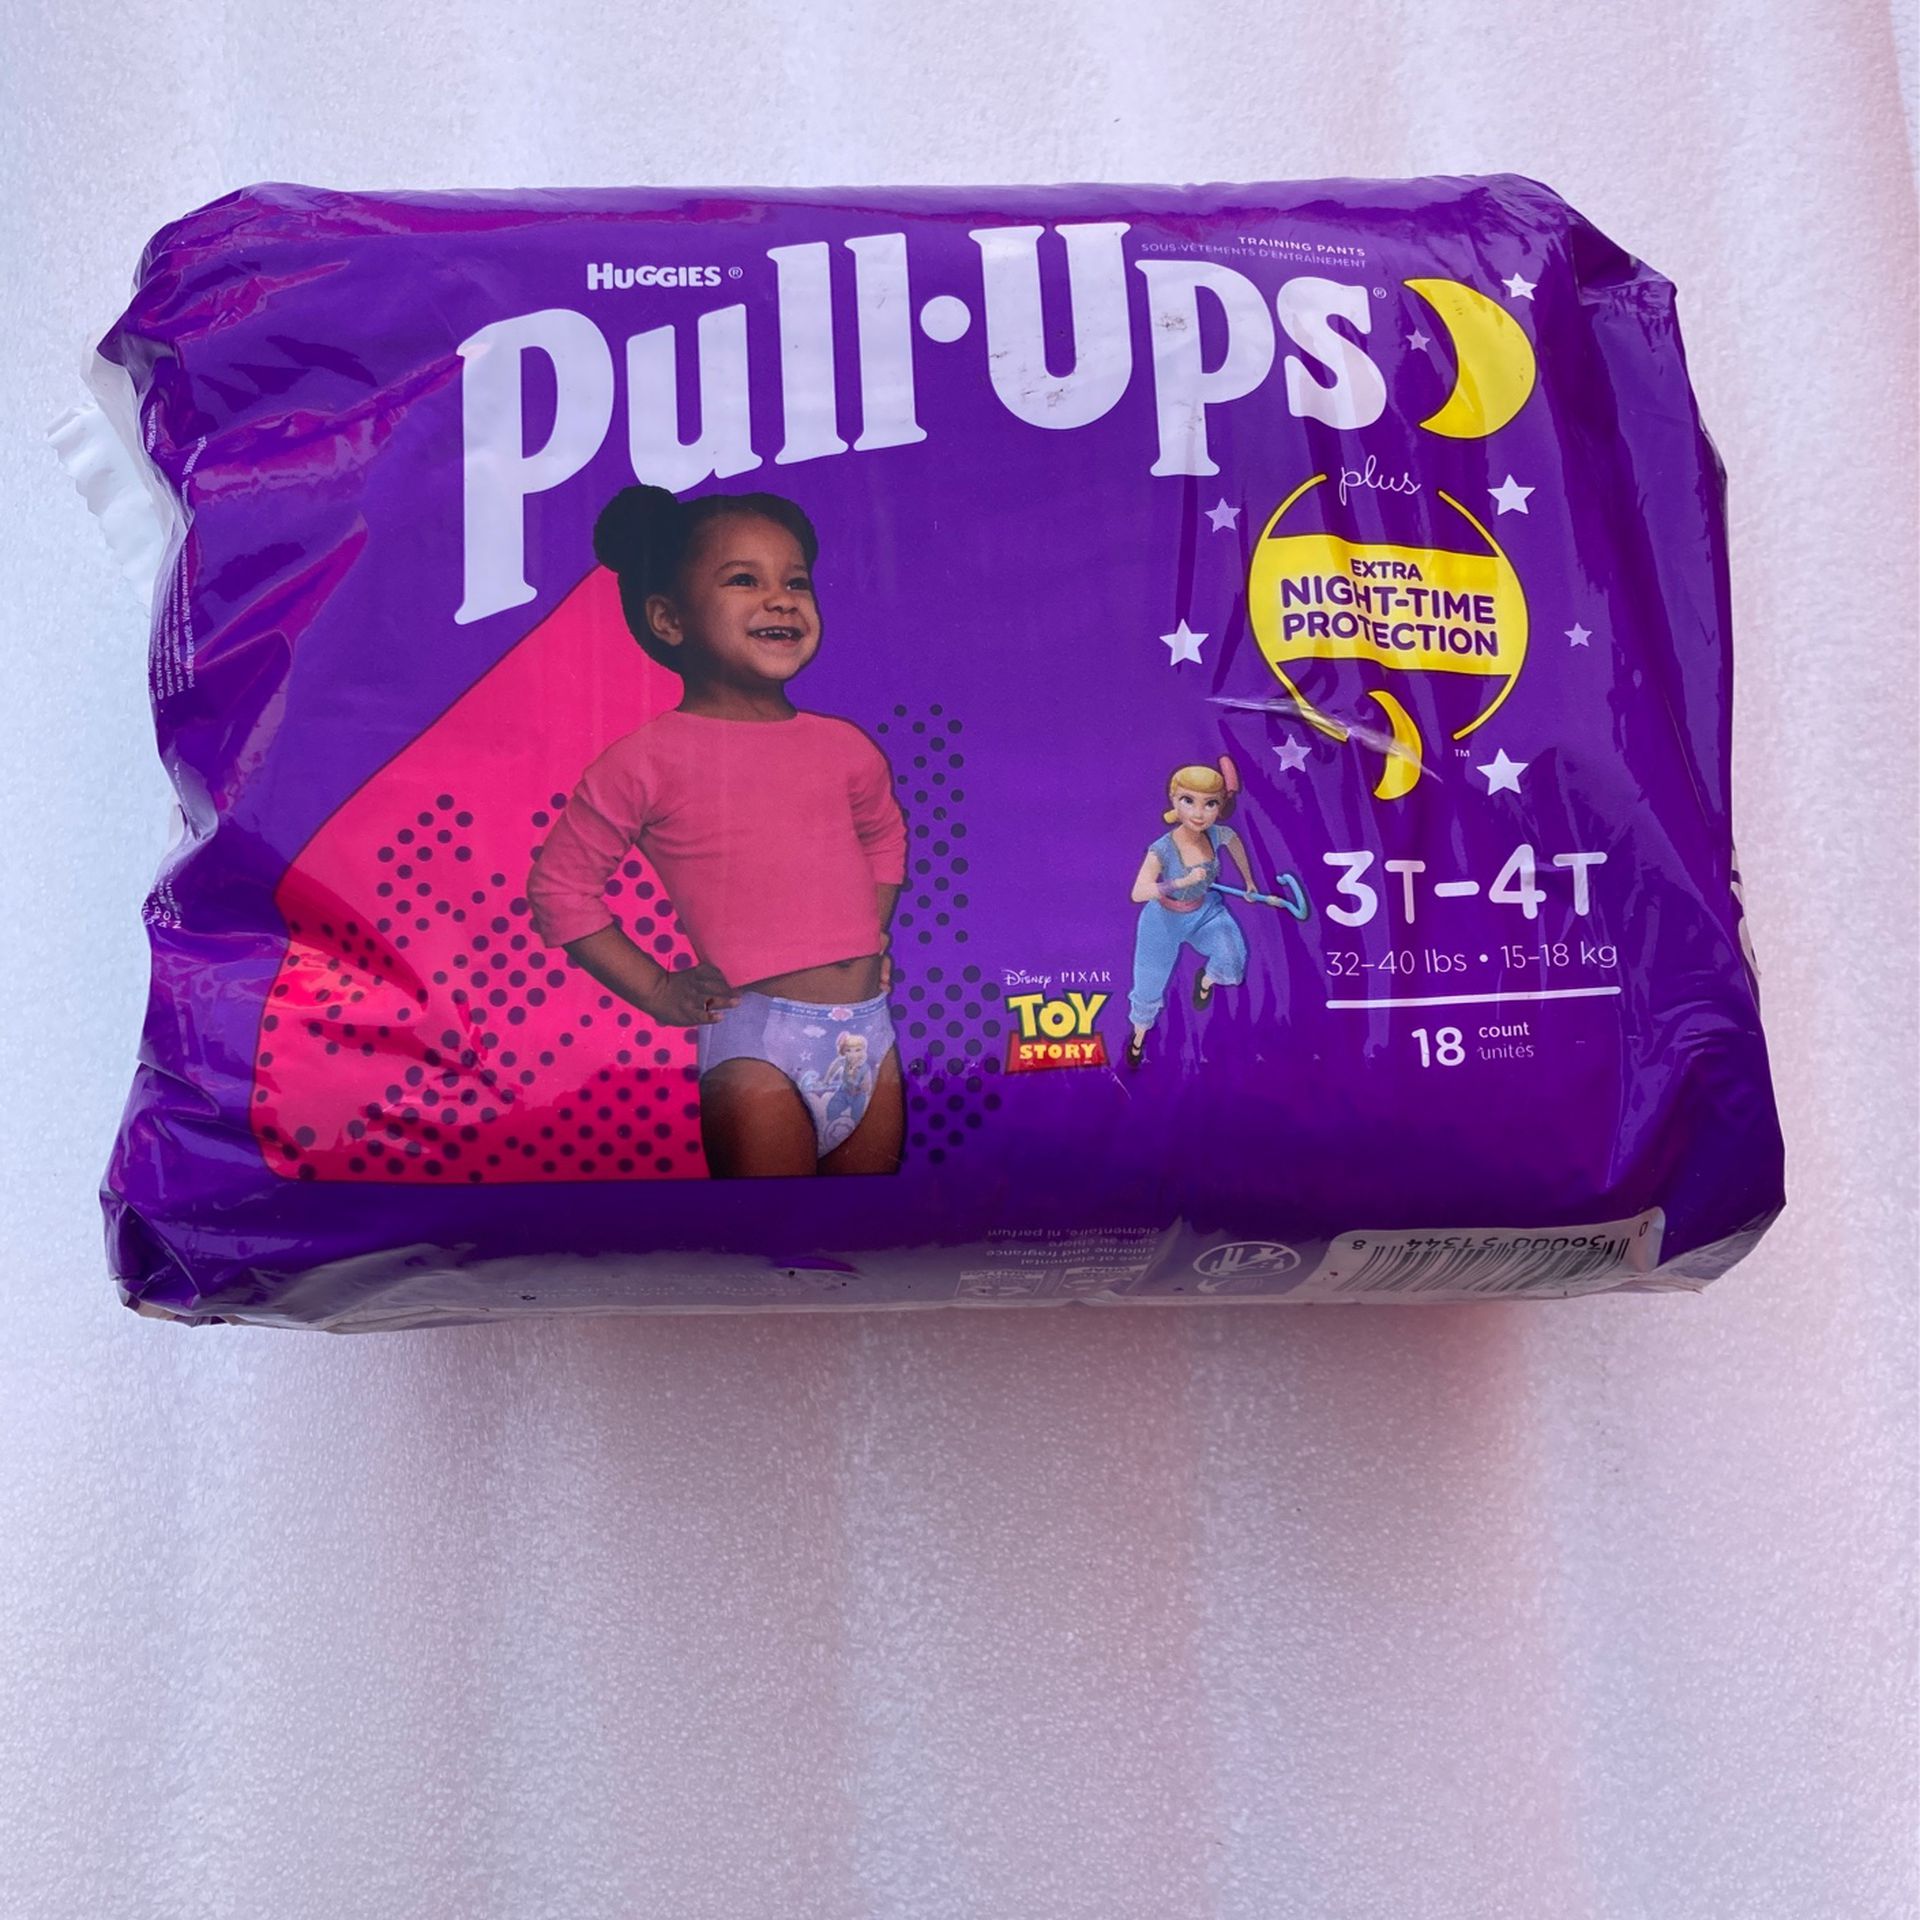 Pull-ups